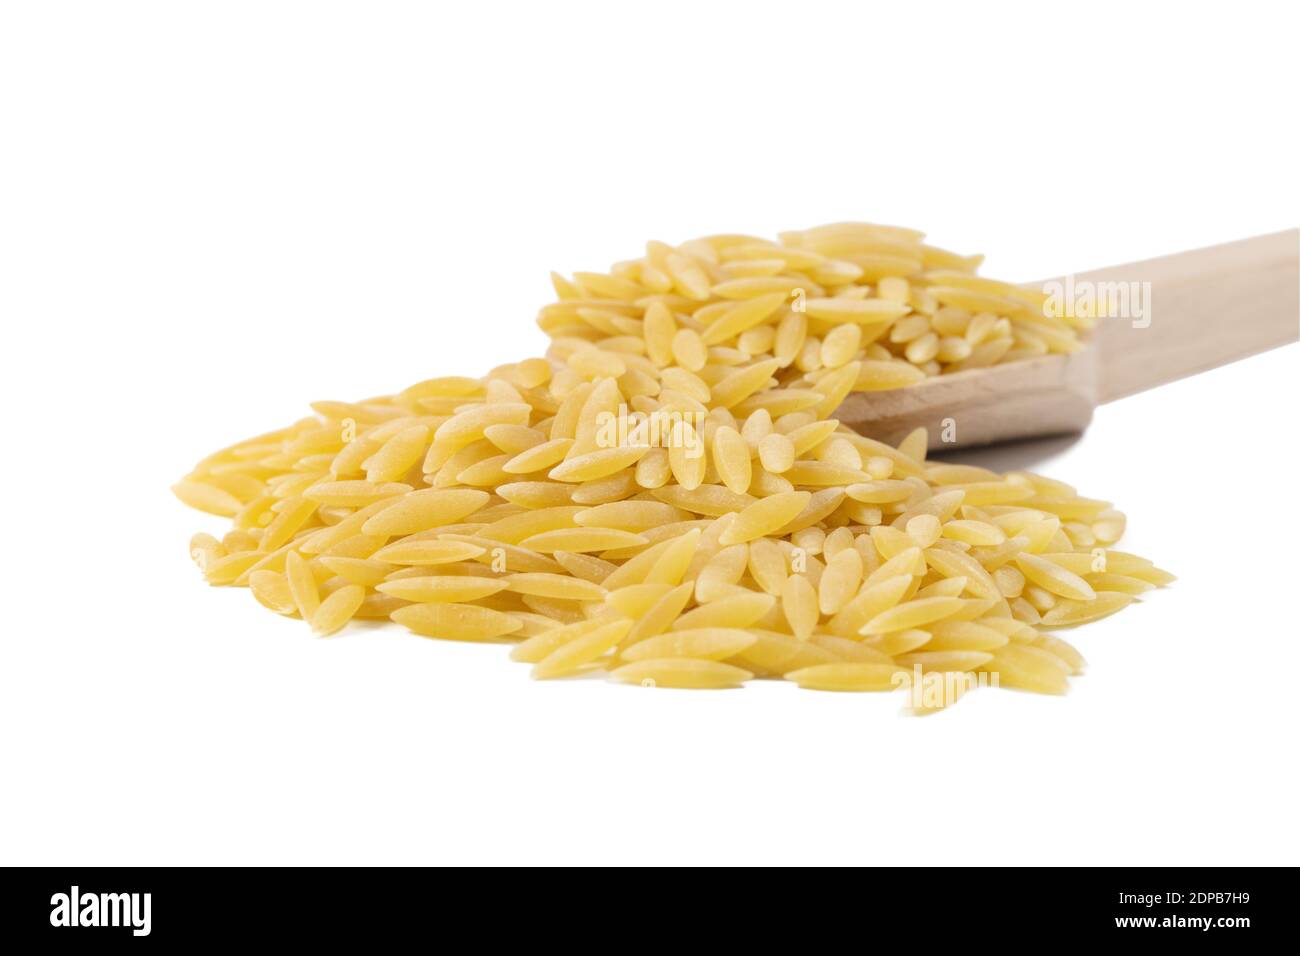 In Grecia chiamato kritharaki. In Italia si chiama Orzo. Pasta a forma di riso in cucchiaio di legno isolato su sfondo bianco. Tipo di pasta. Ingrediente alimentare. Foto Stock